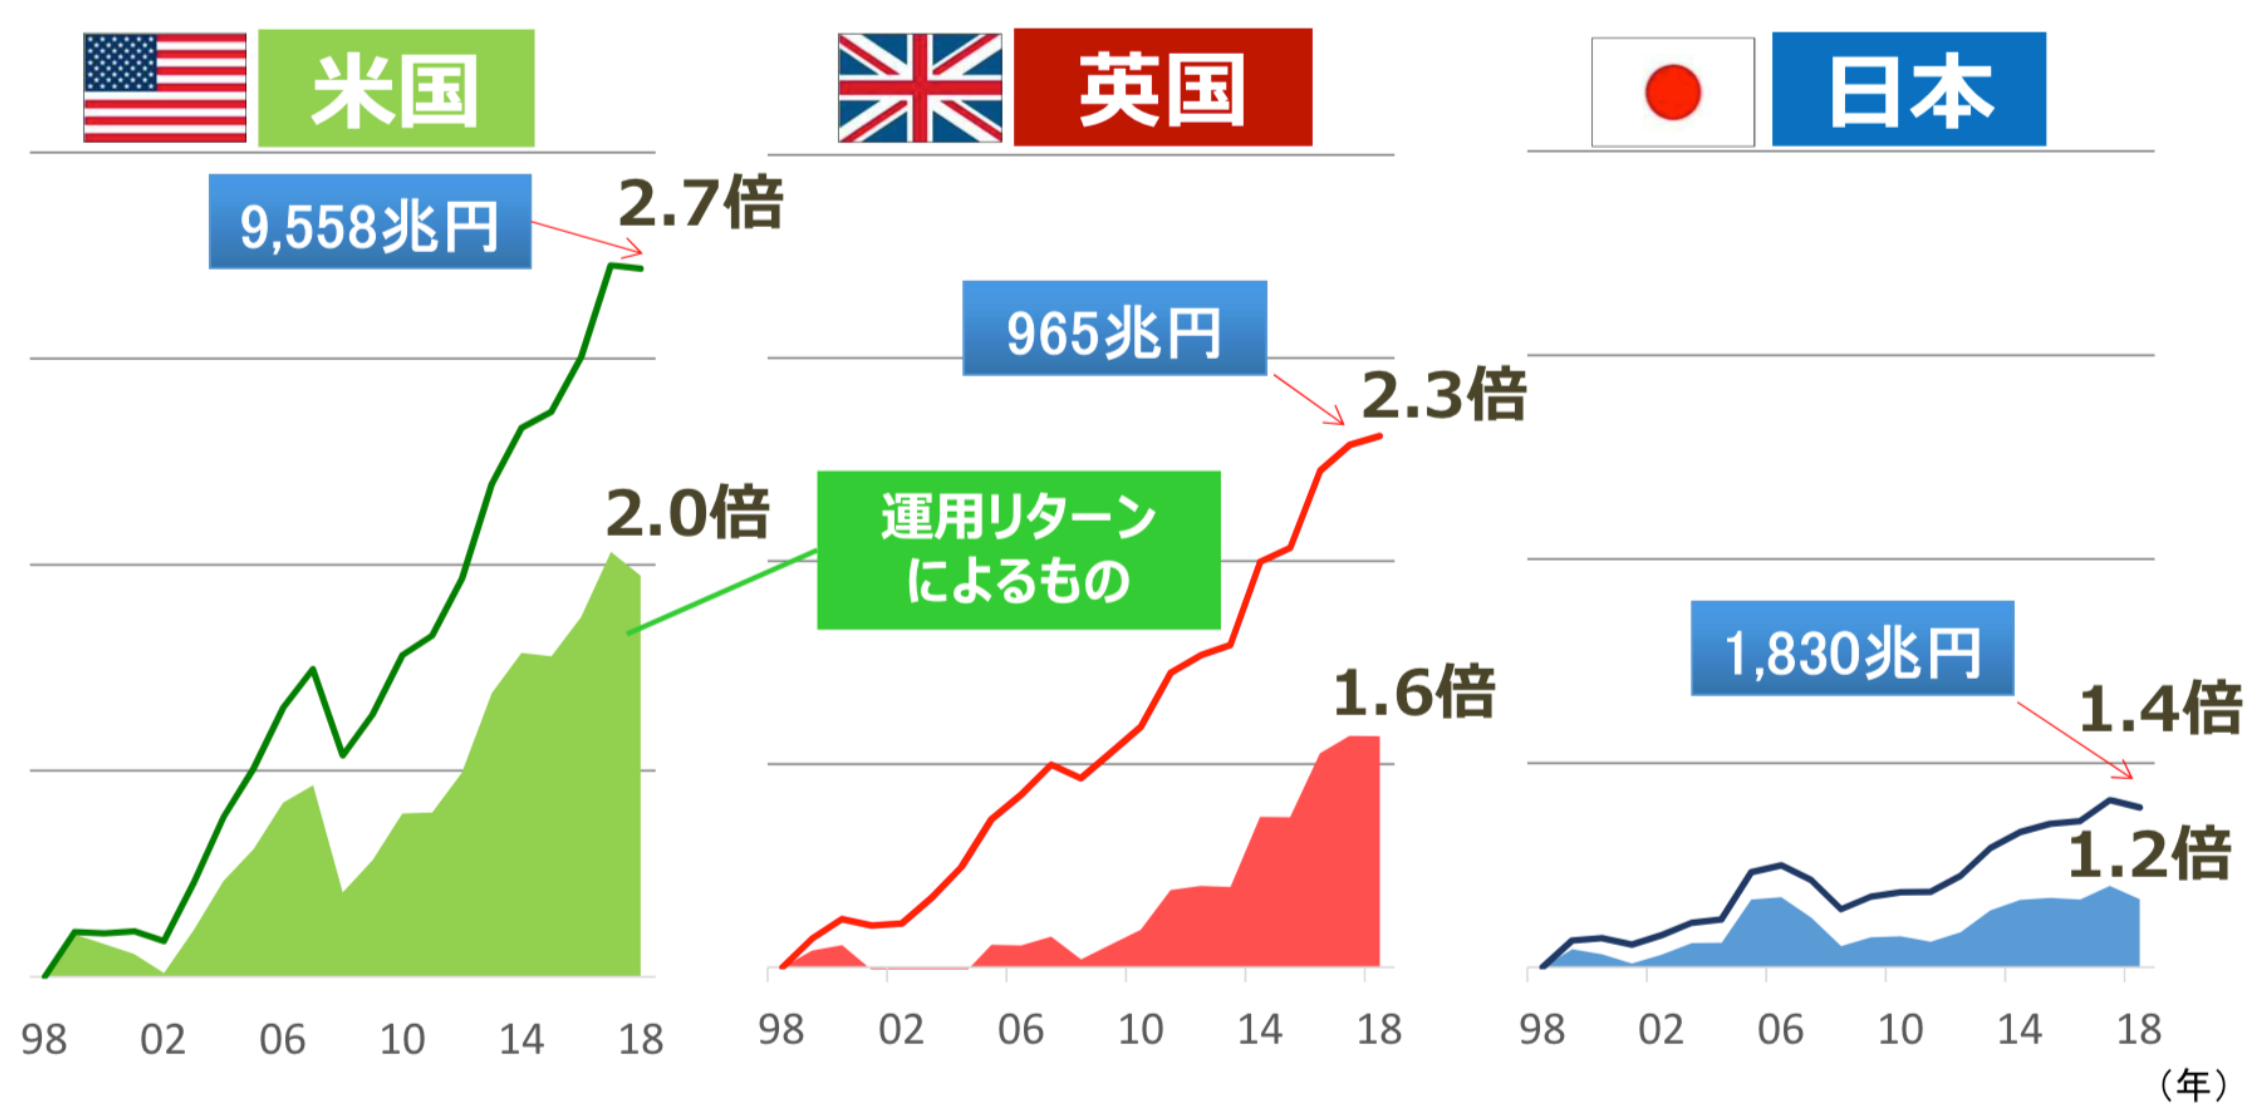 日本では運用リターンによる金融資産額の伸びが小さい